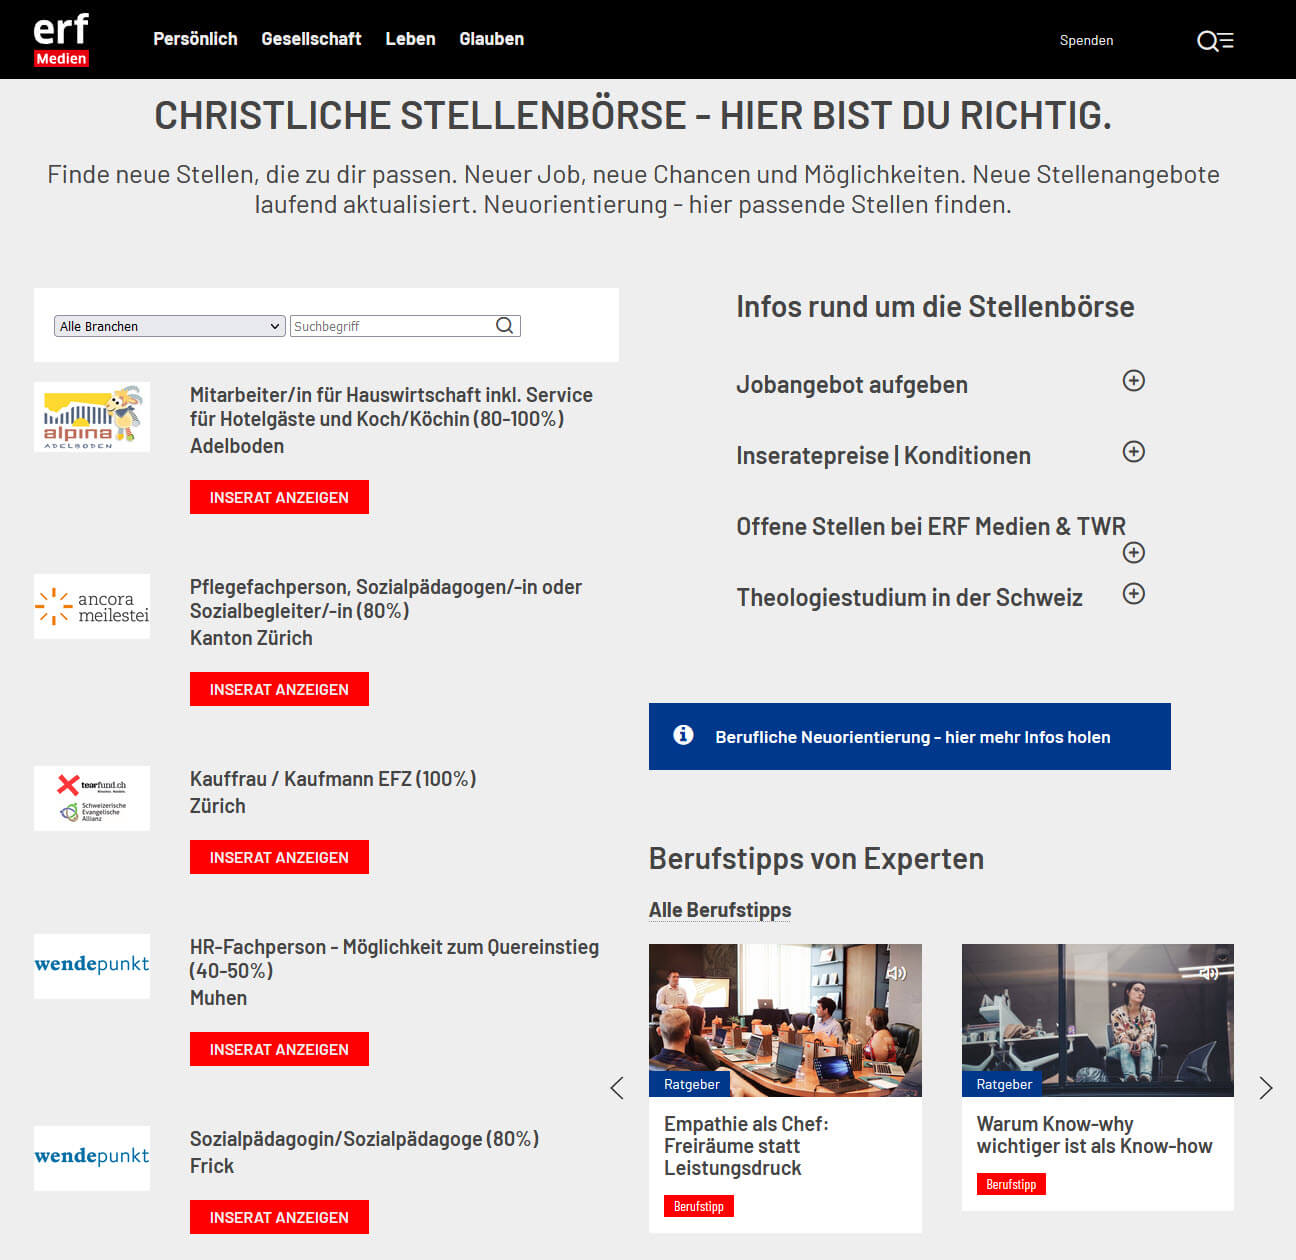 Christliche Stellenangebote, Jobbörse auf ERF-Medien.ch